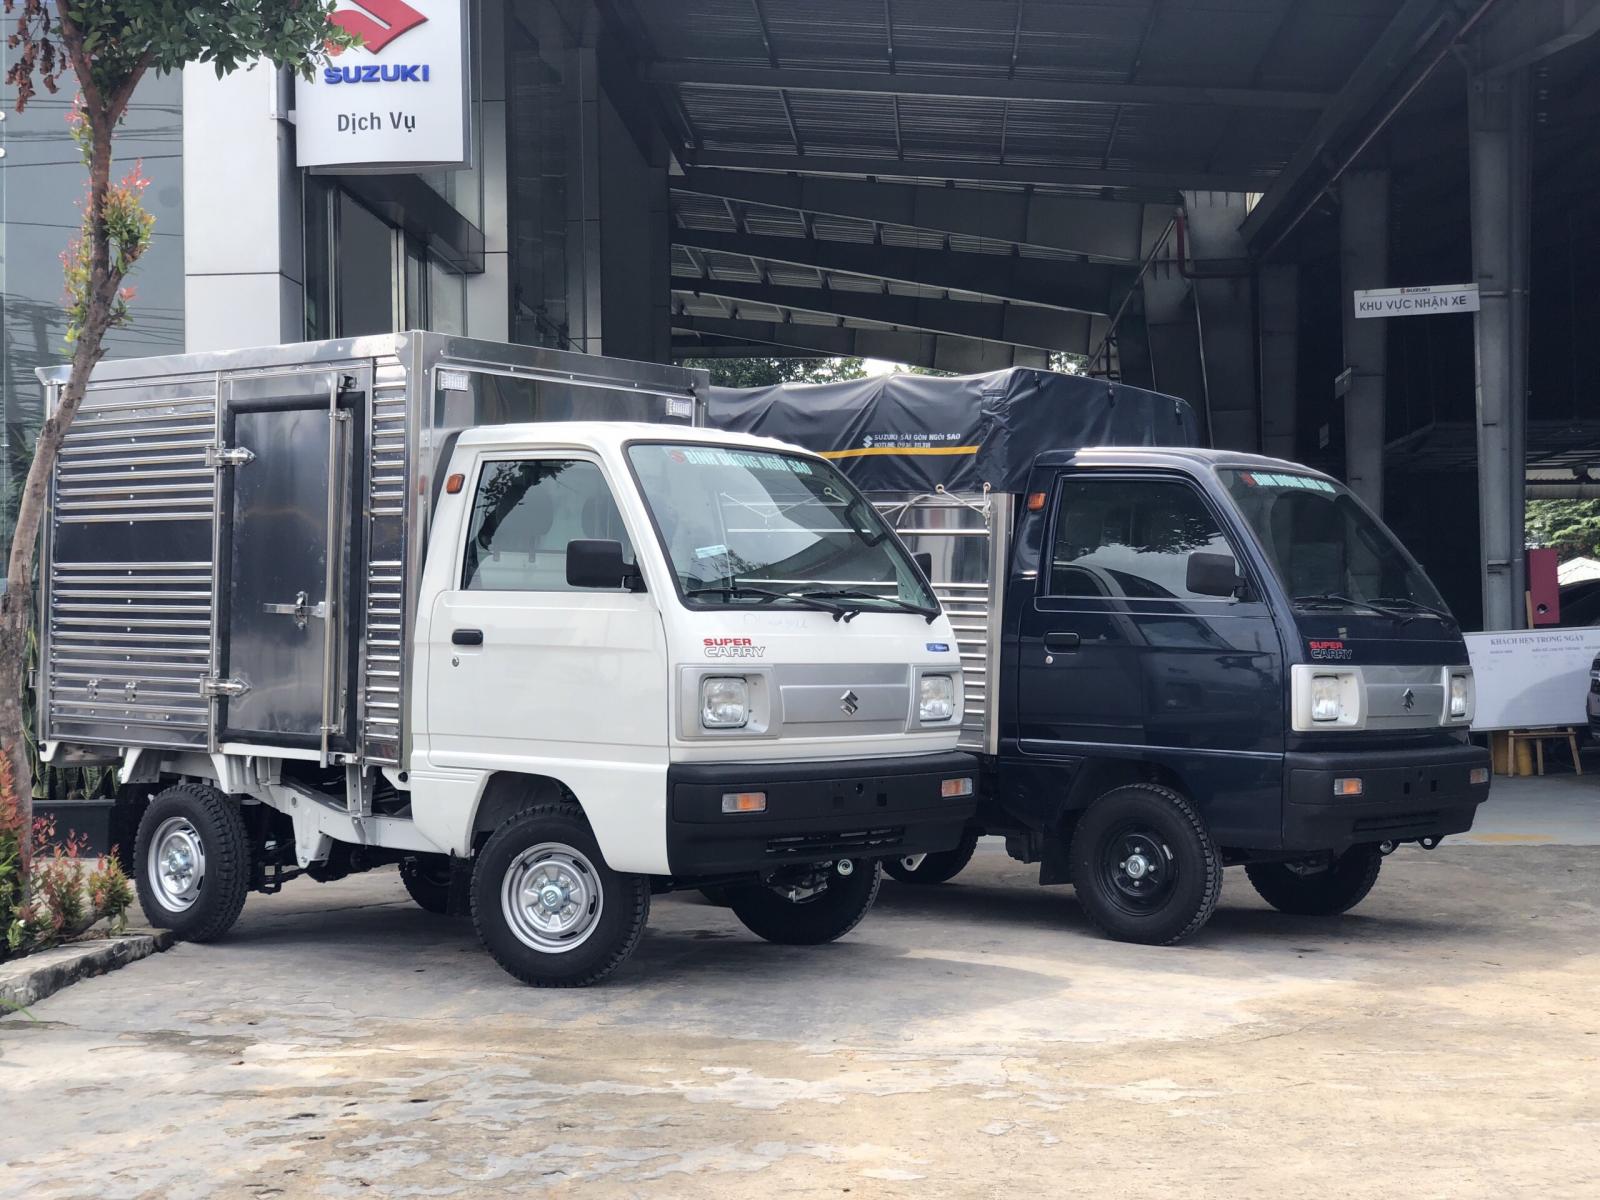 Suzuki Truck 500kg tiết kiệm tối đa-0